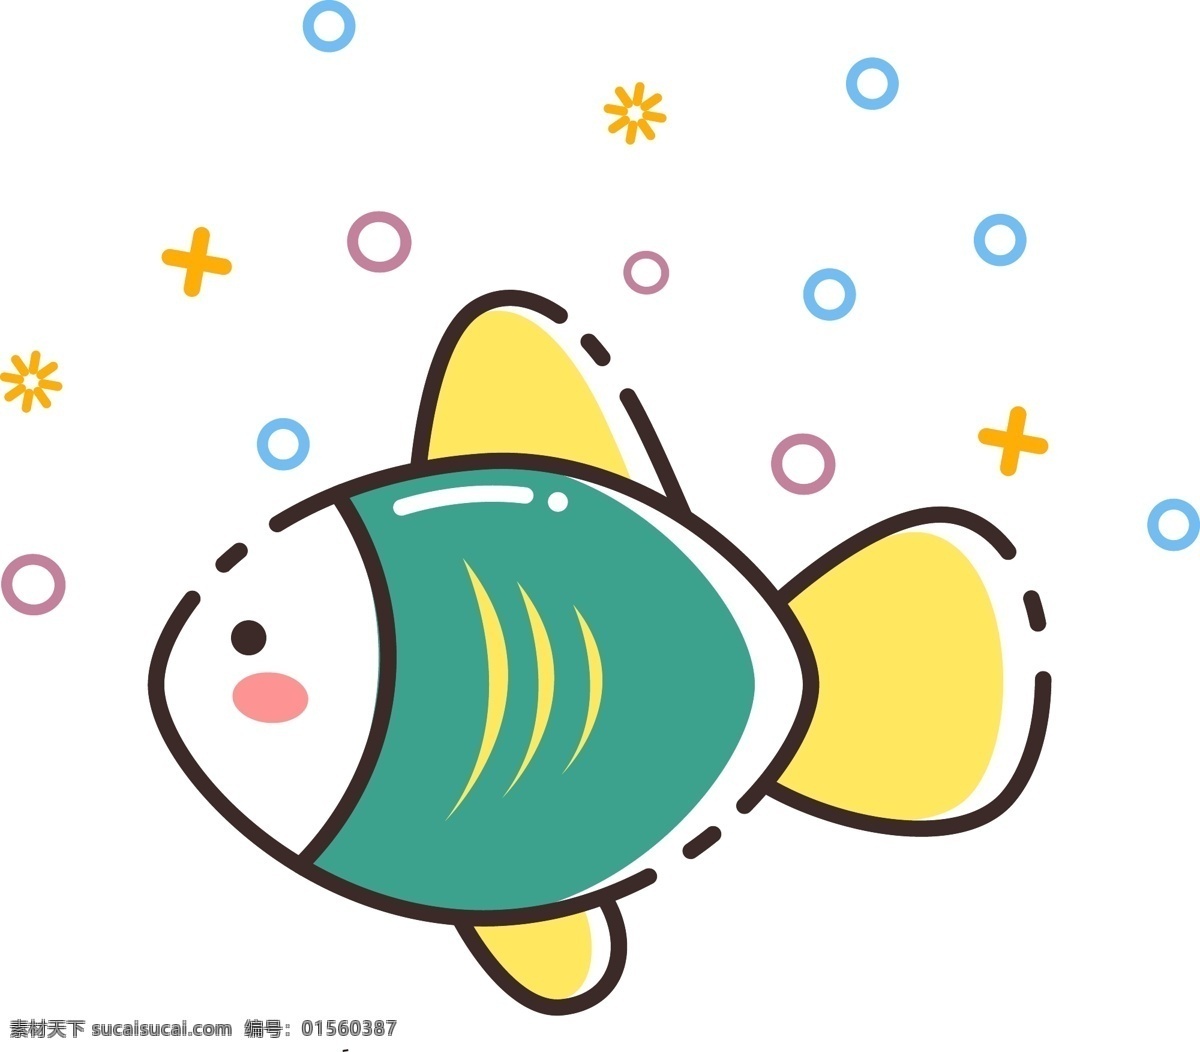 mbe 图标 创意 小 鱼类 动物 矢量 商用 卡通鱼图案 海鱼 彩色的鱼 绿色 黄色 mbe图案 小鱼 简约小鱼 扁平 图案 风 清新 鱼 印花 可爱萌鱼